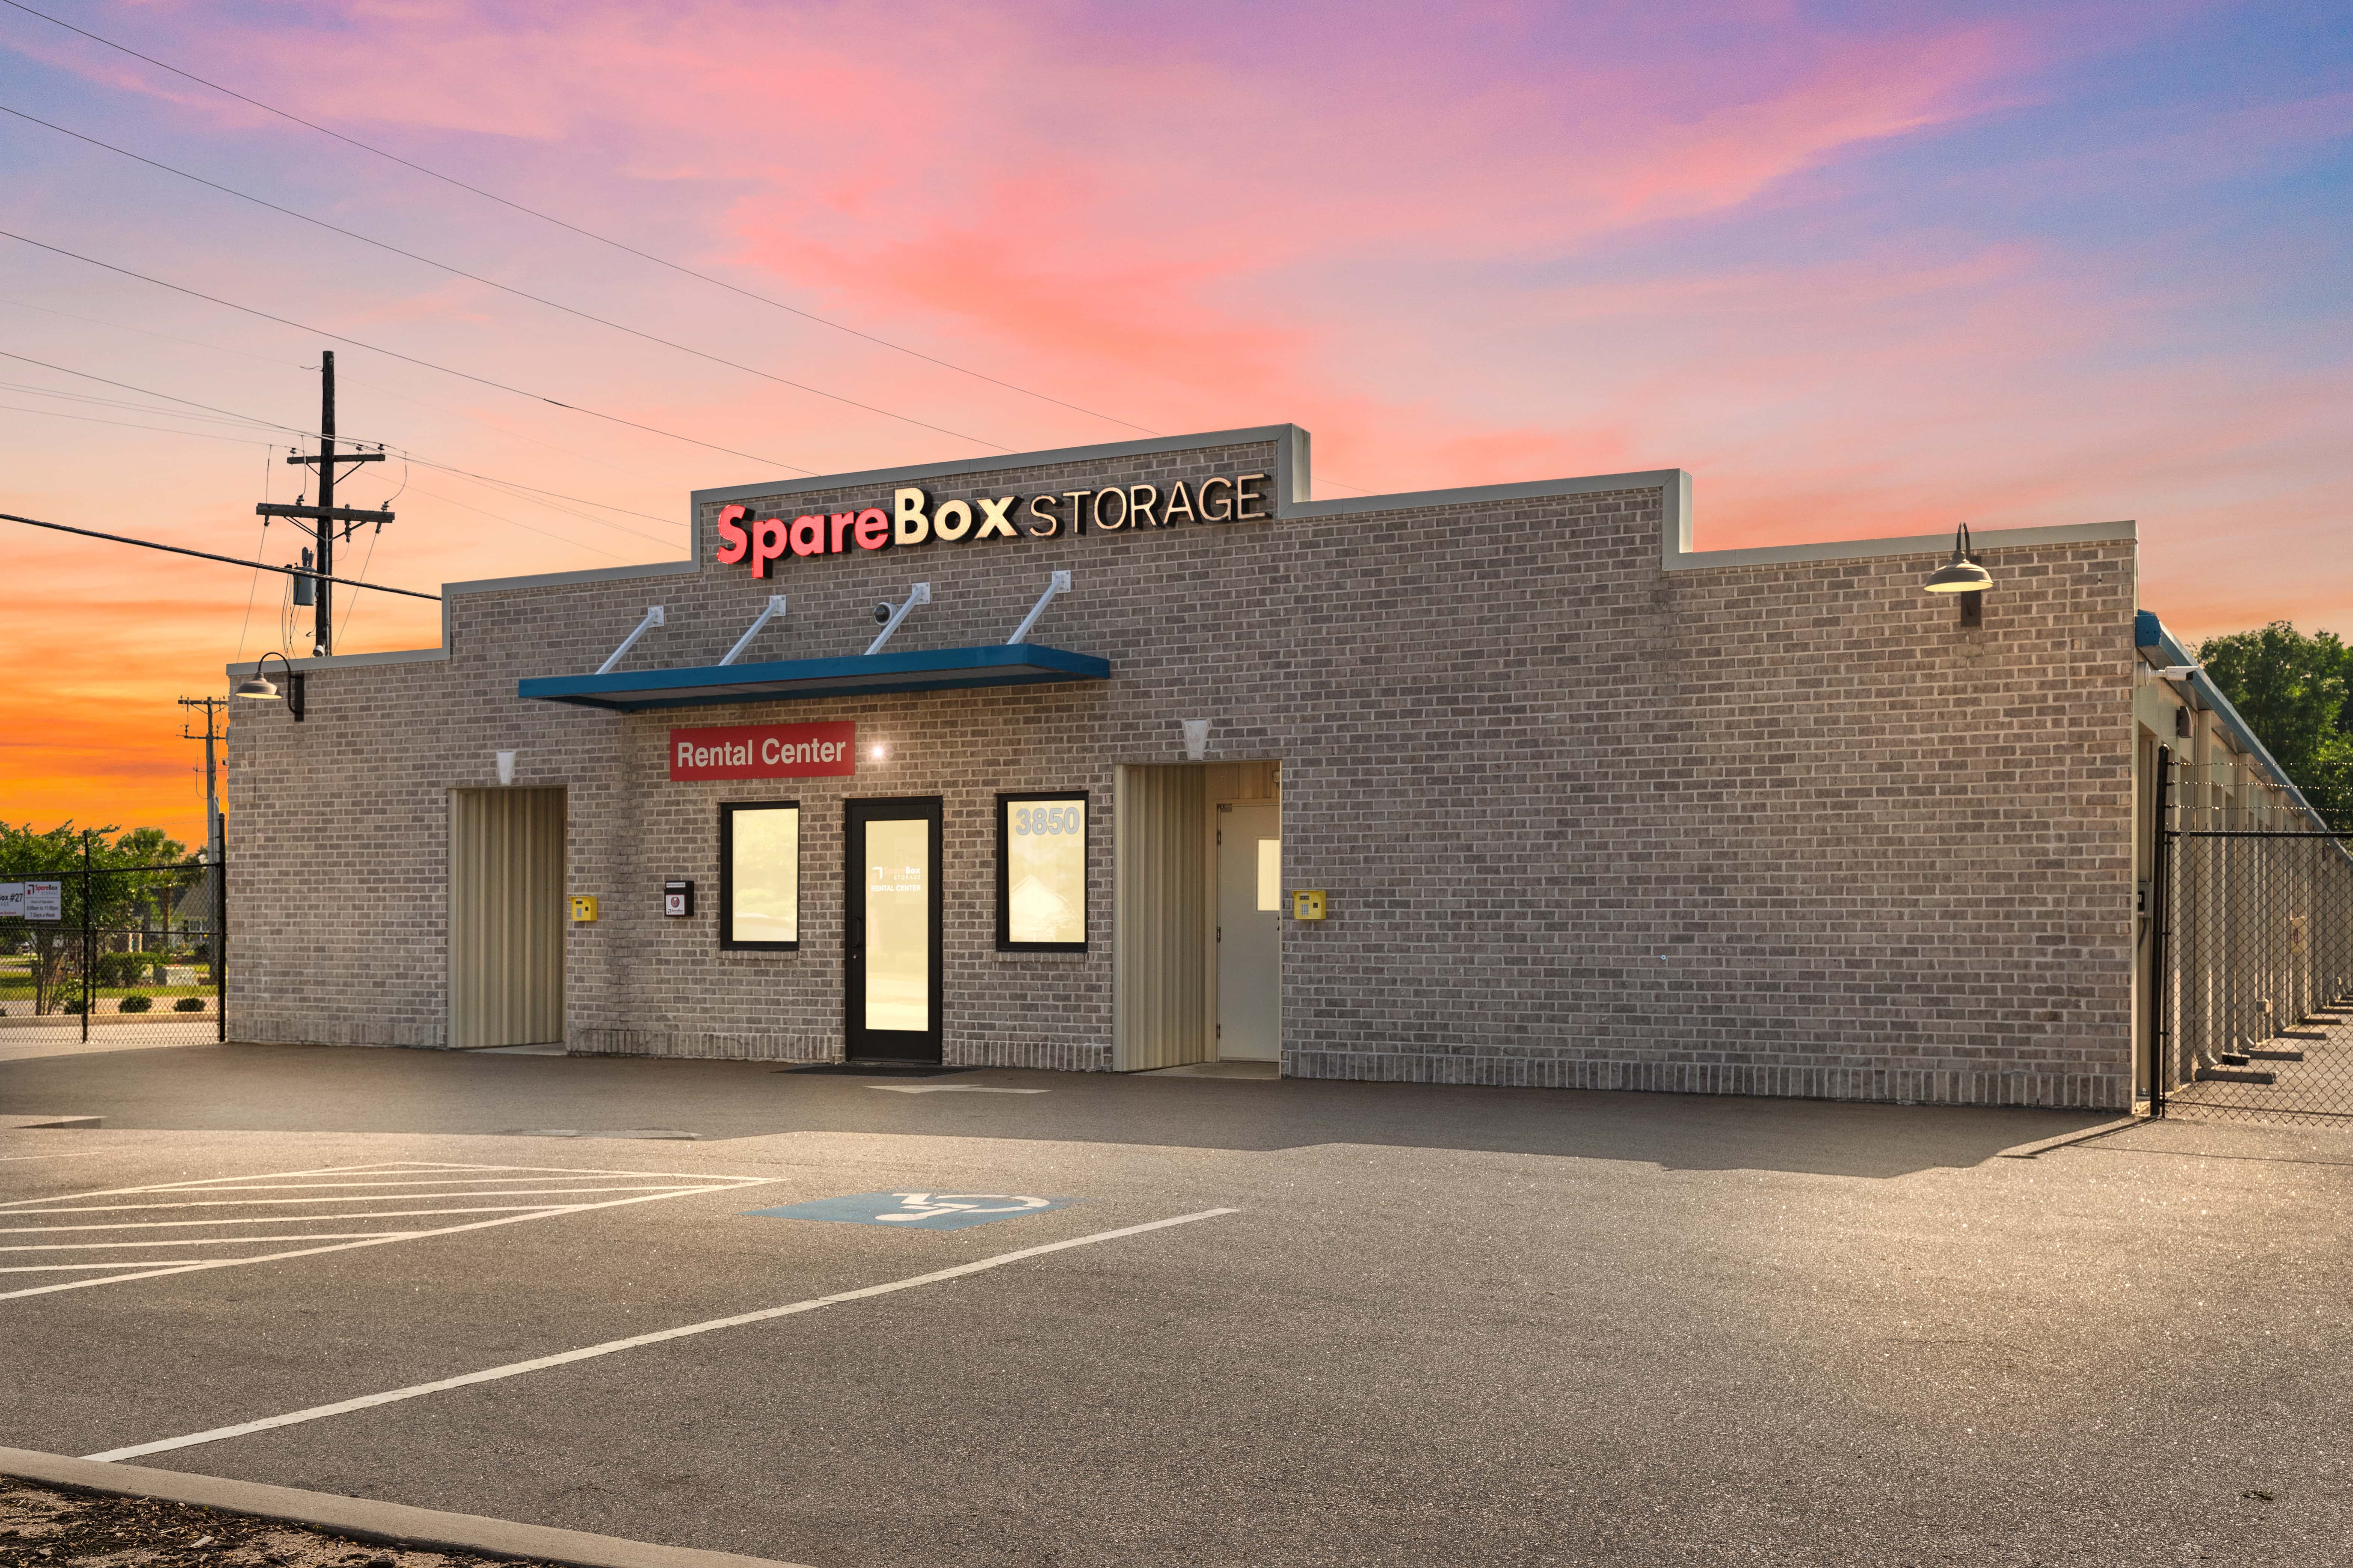 SpareBox has storage units in Myrtle Beach on Palmetto Pointe Blvd | SpareBox Storage